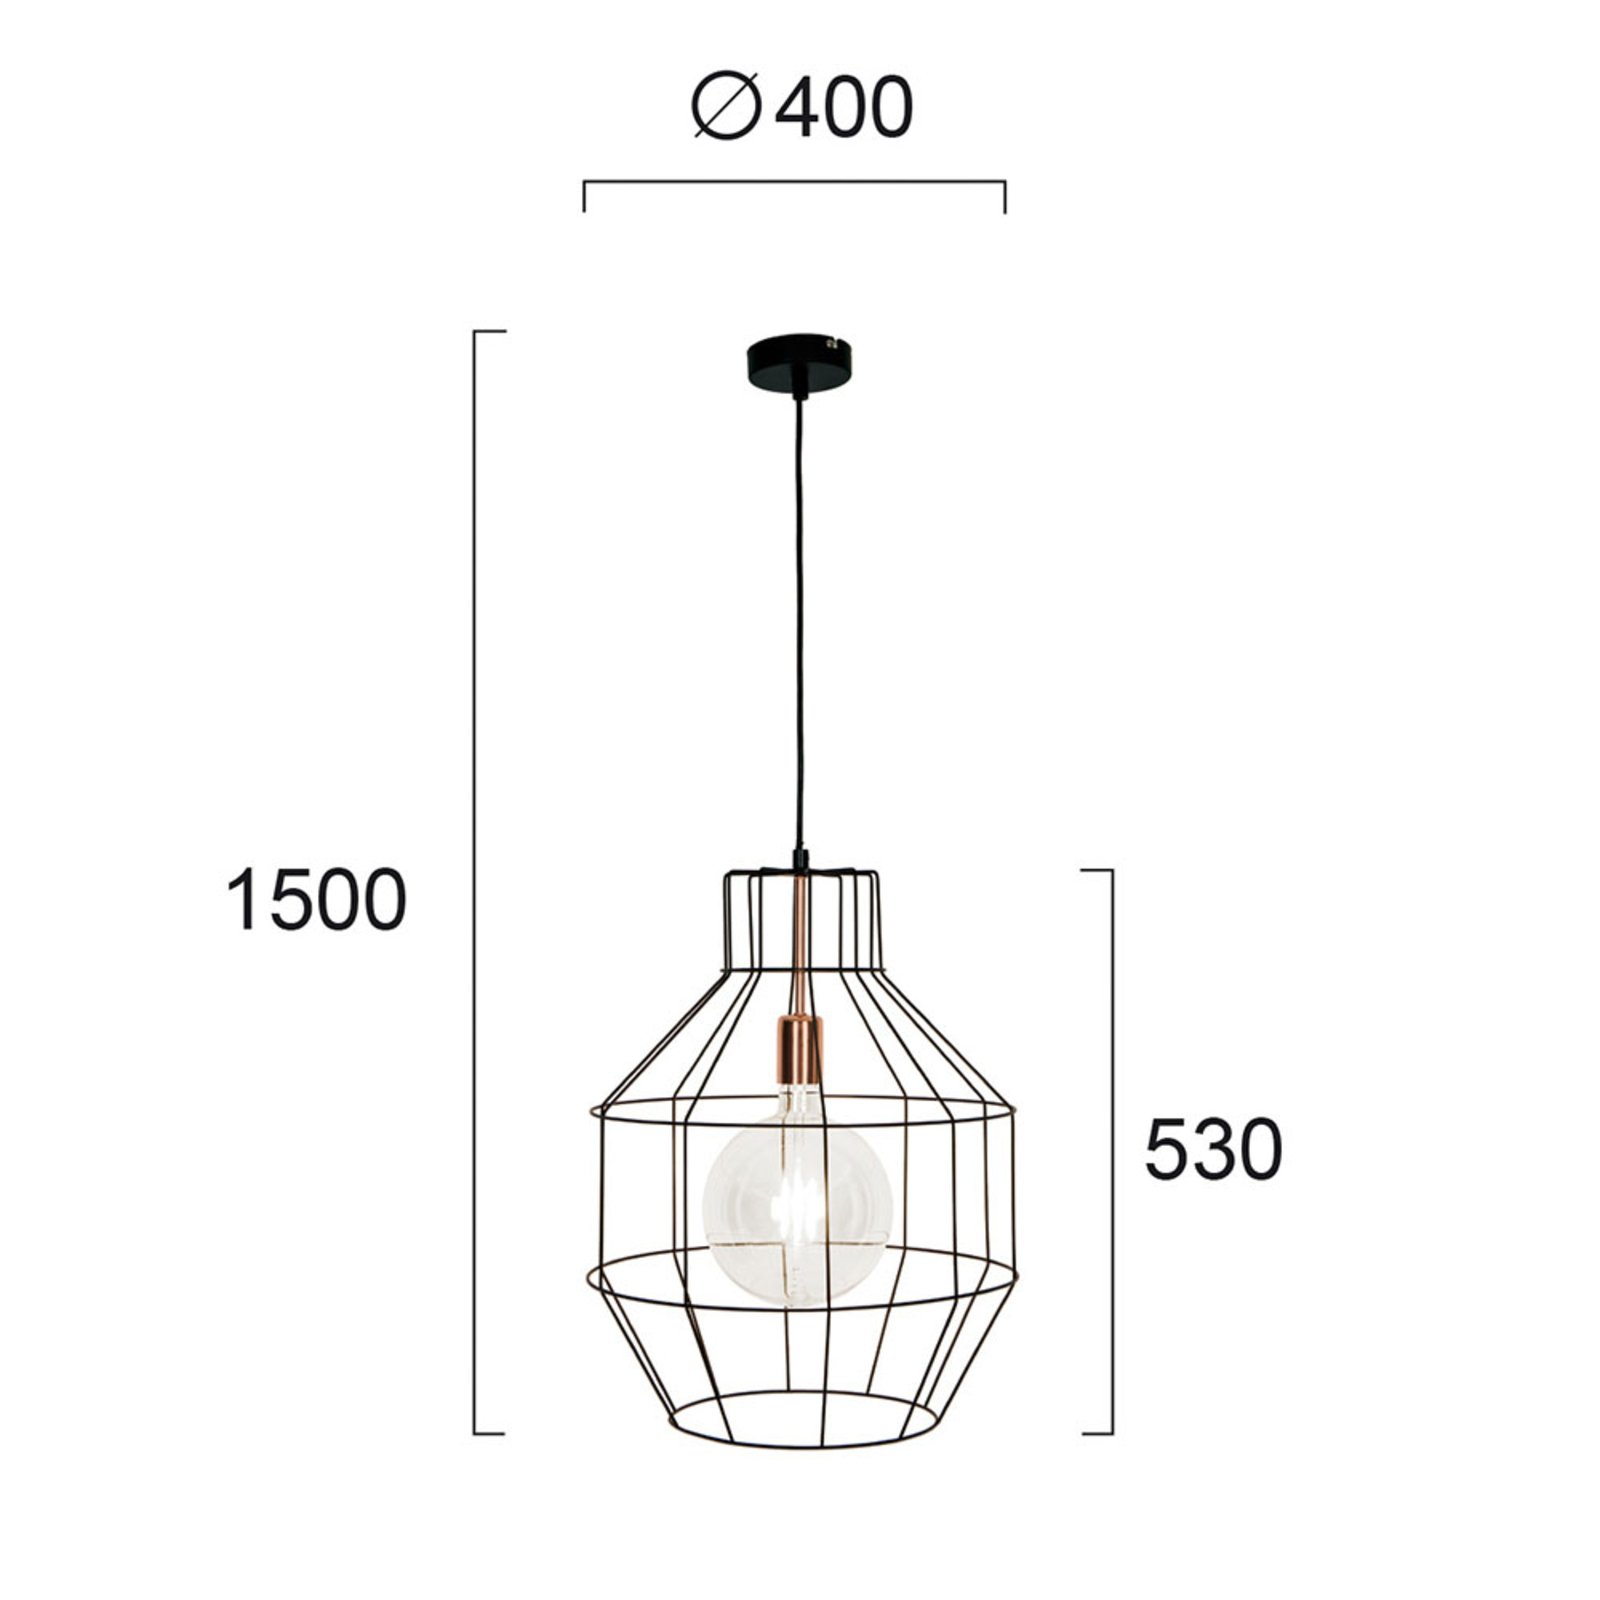 Hanglamp Nexus in kooivorm, Ø 40 cm